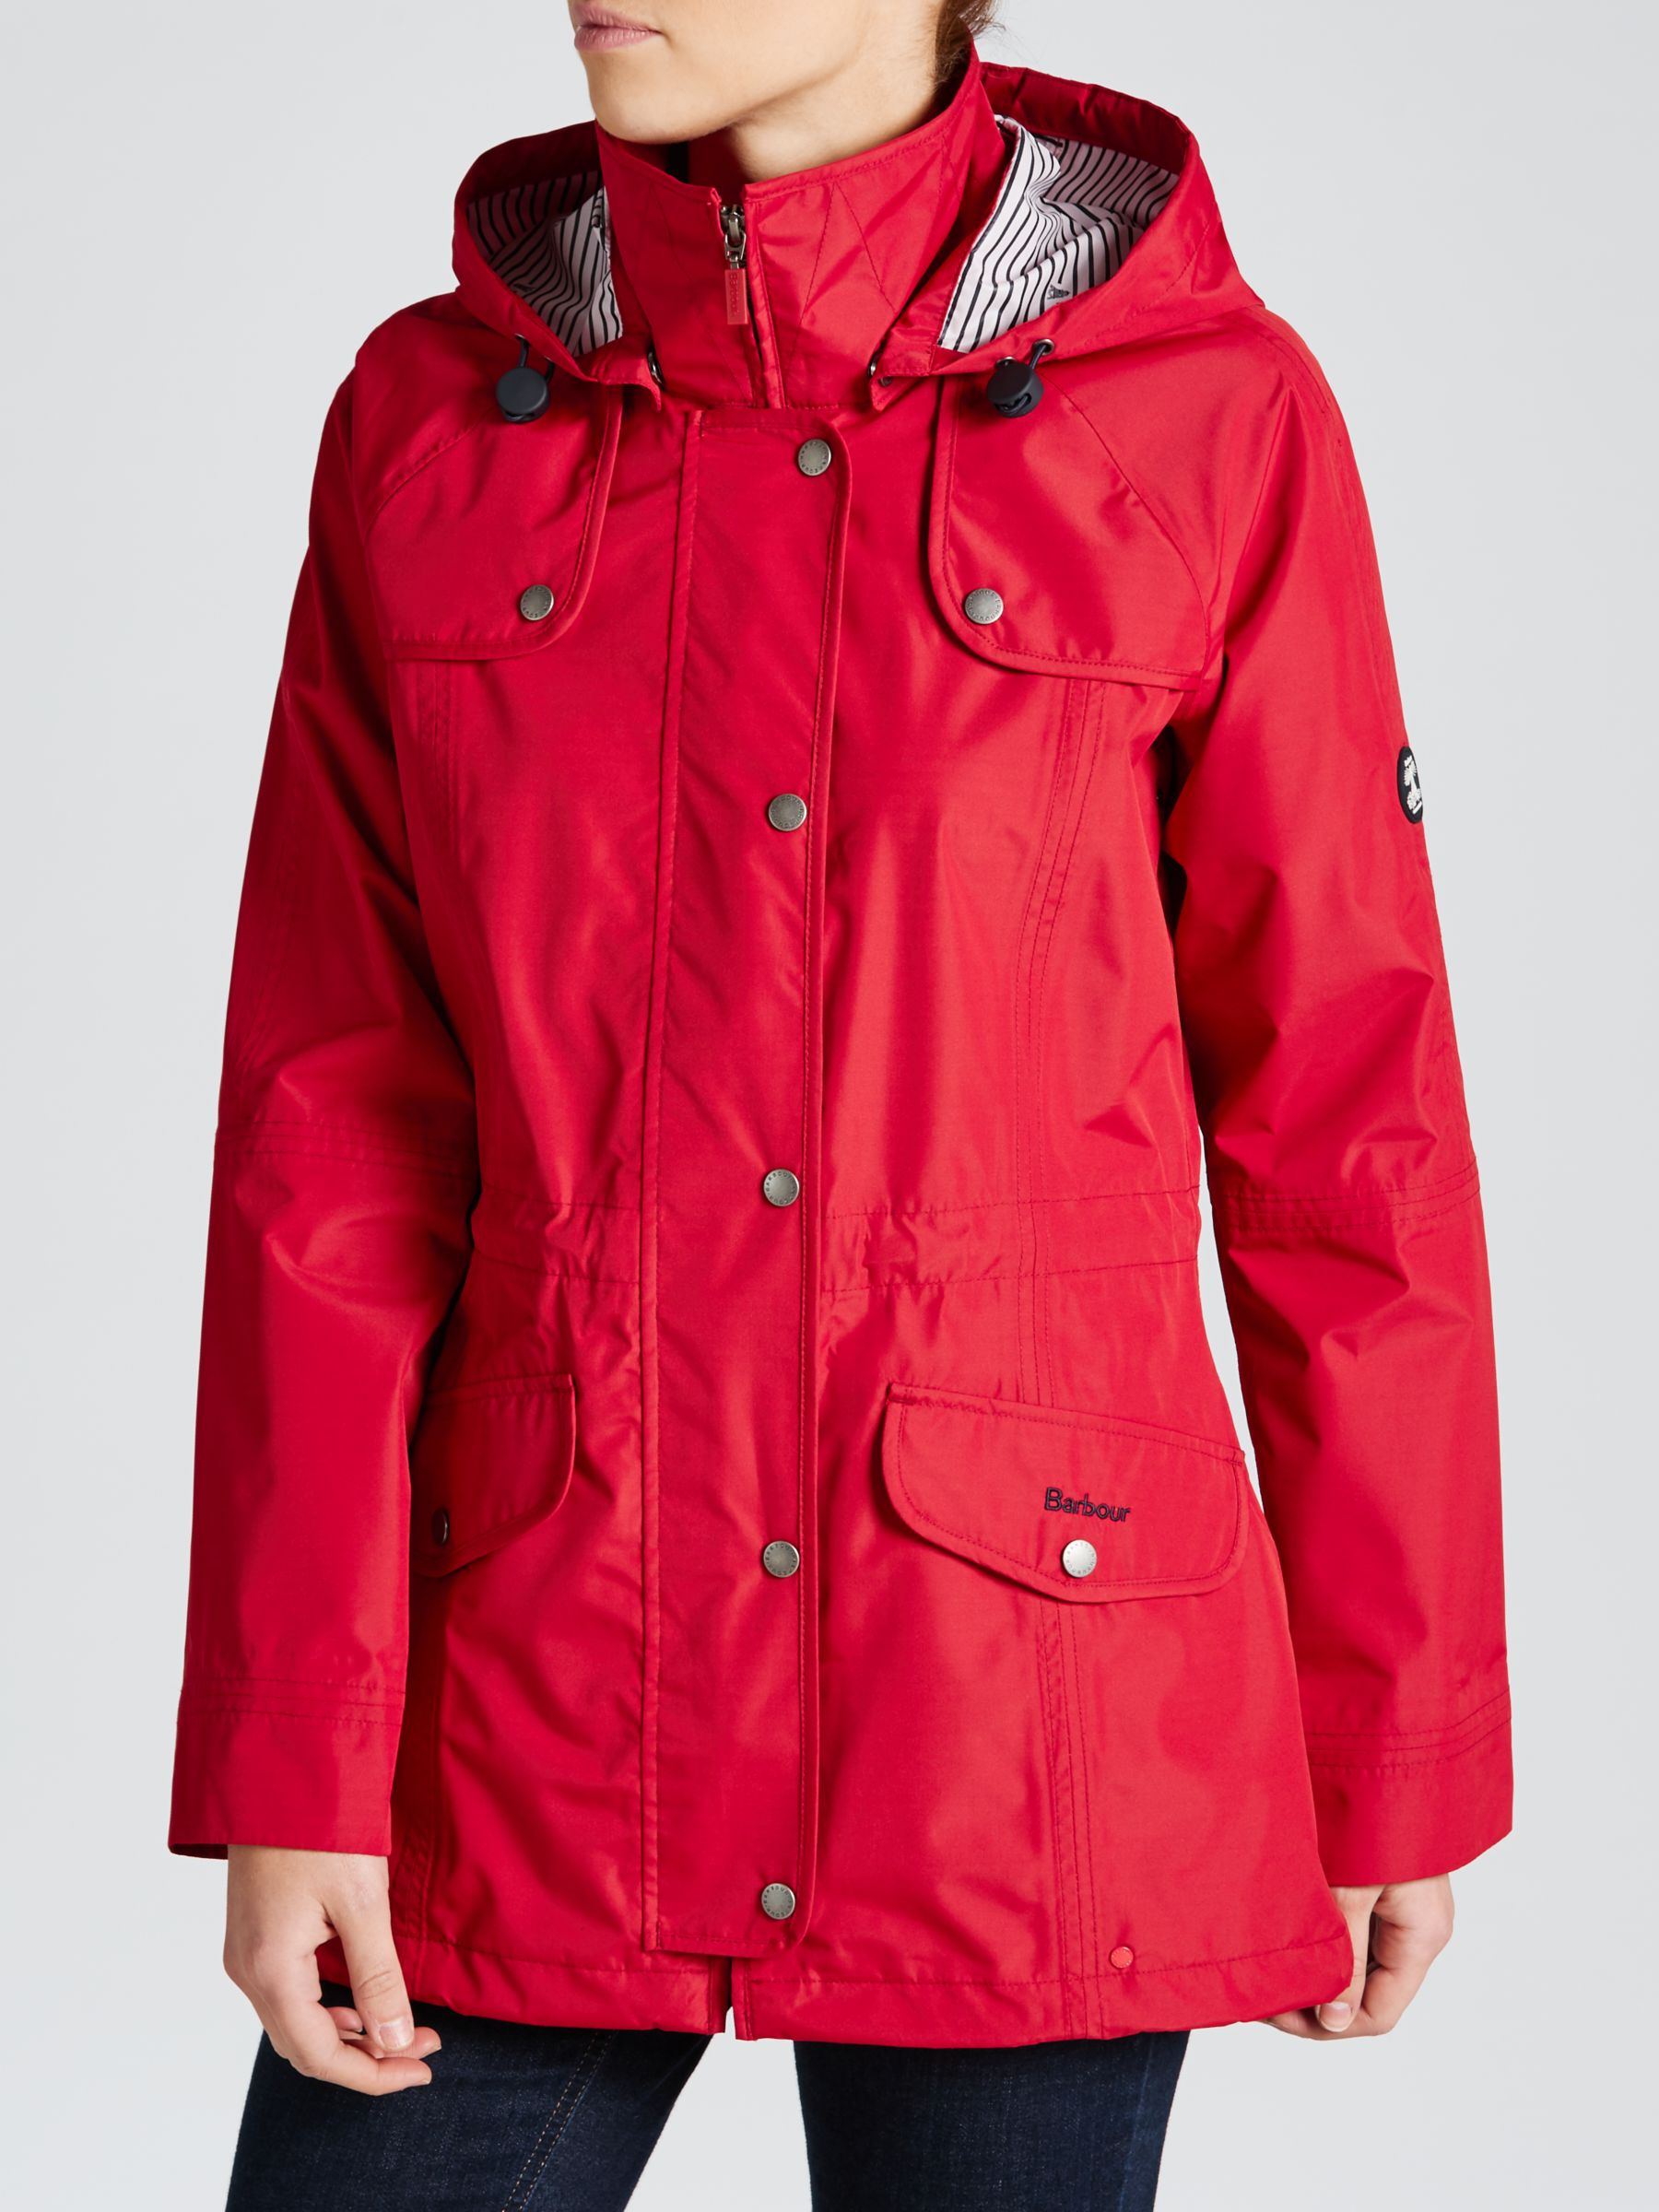 barbour red waterproof jacket